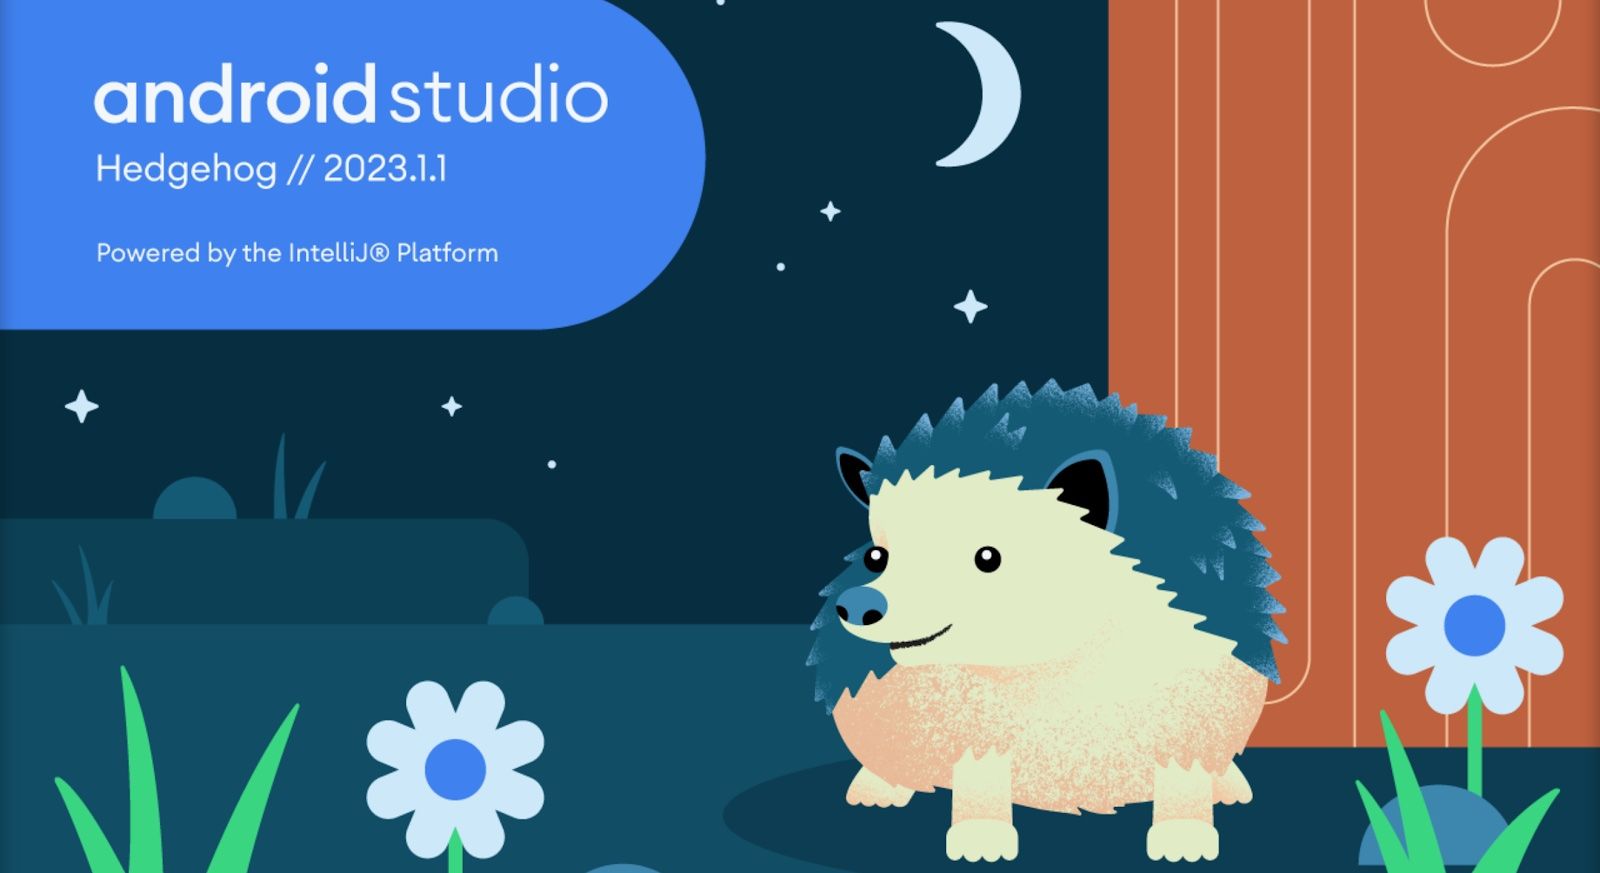 Uma ilustração artística para o lançamento do Android Studio 2023.1.1 Hedgehog, apresentando um ouriço desenhado em uma campina à noite